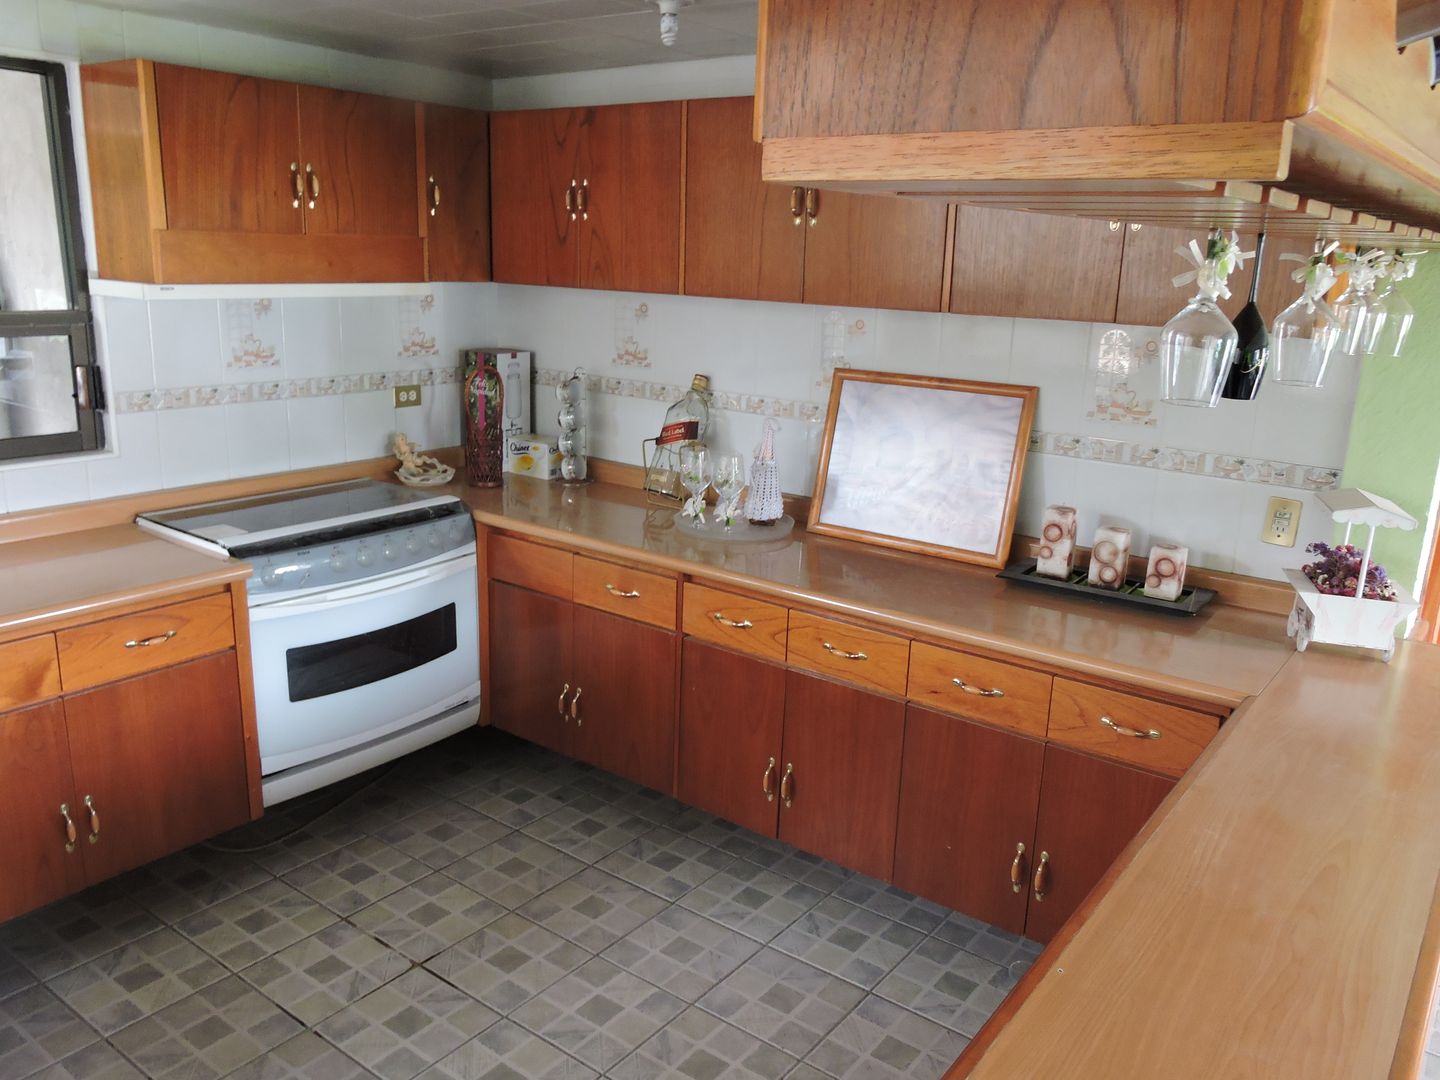 Barra, Cantina y Puertas de cocina en madera., La Casa del Diseño La Casa del Diseño Modern style kitchen Wood Wood effect